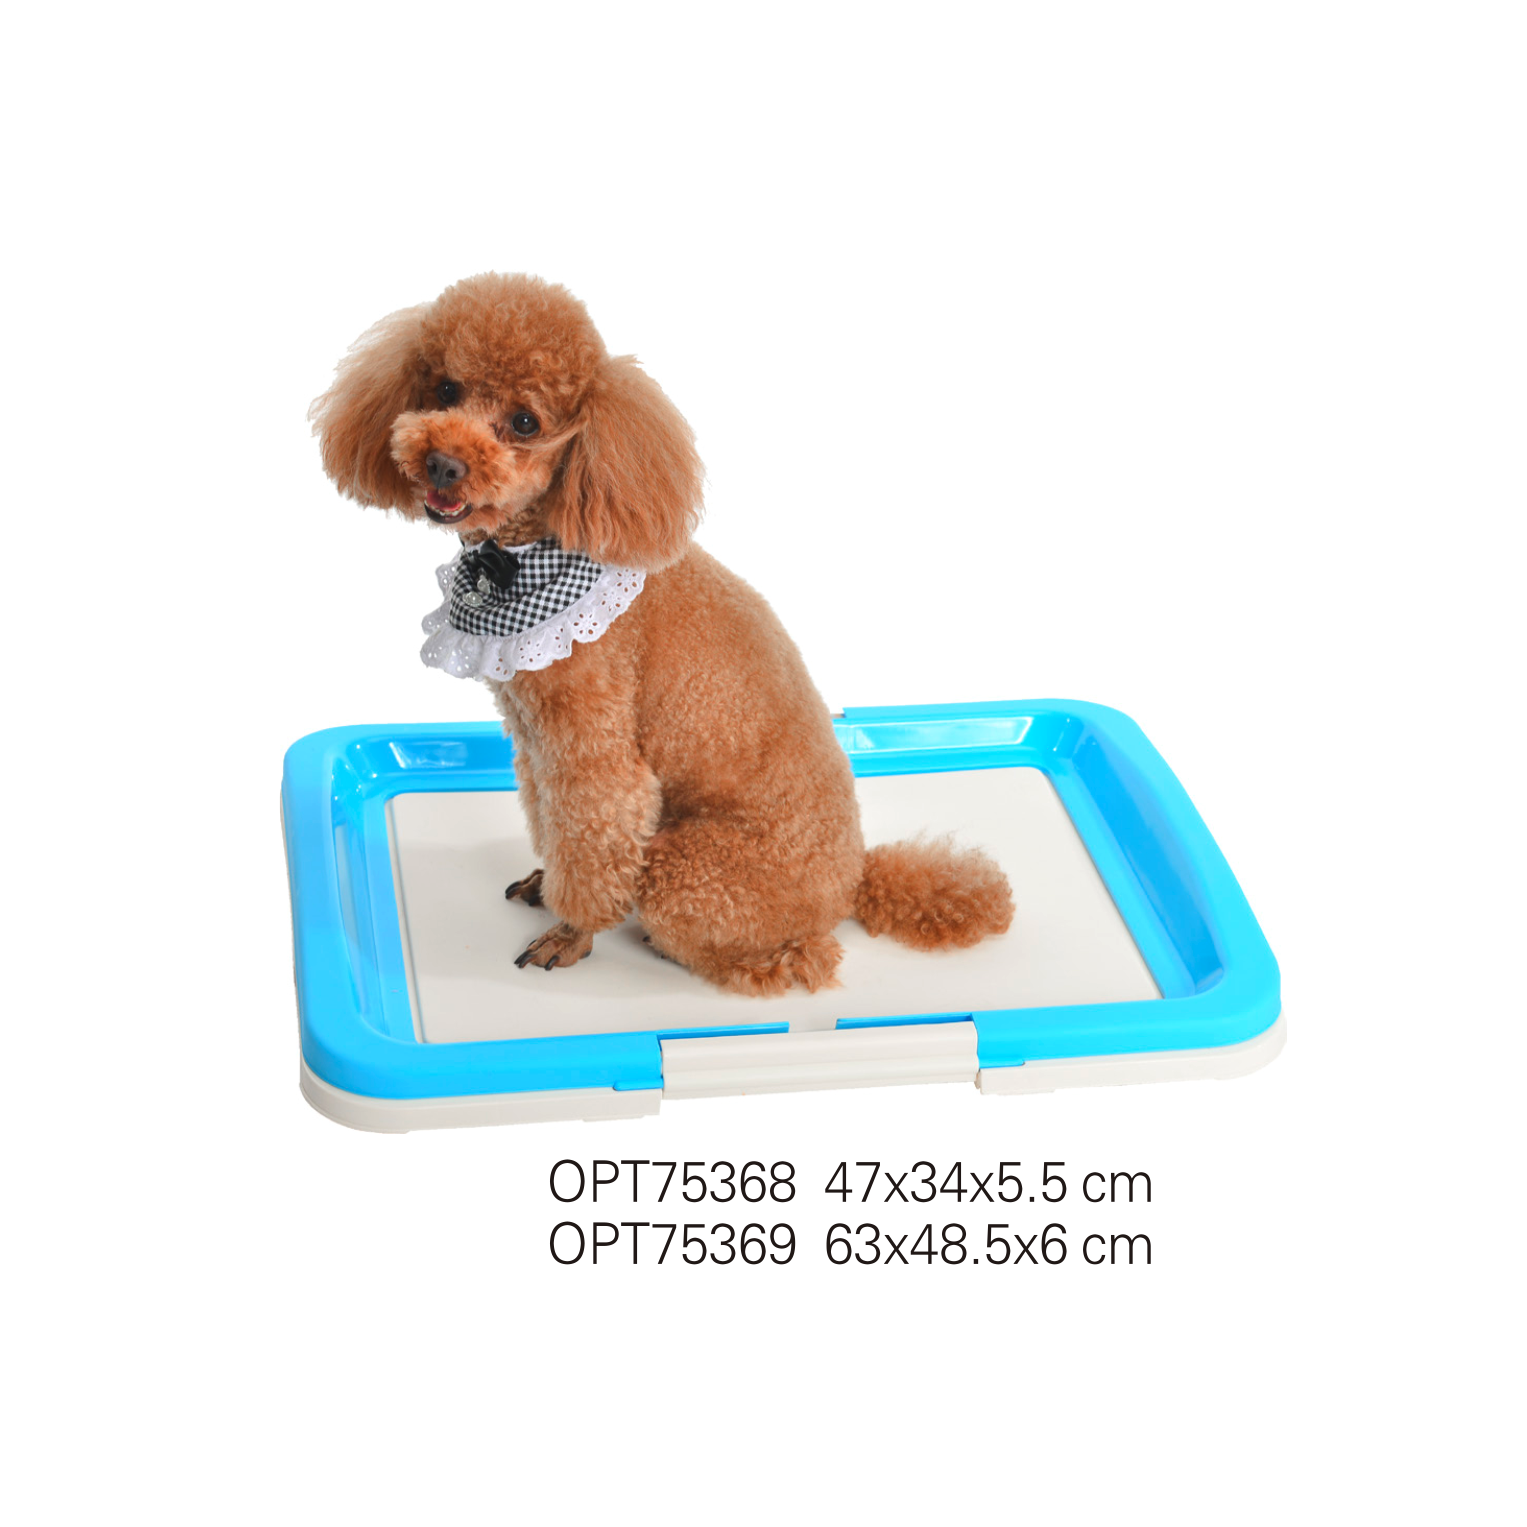 OPT75368-OPT75369 Plastic tiems dog toilet